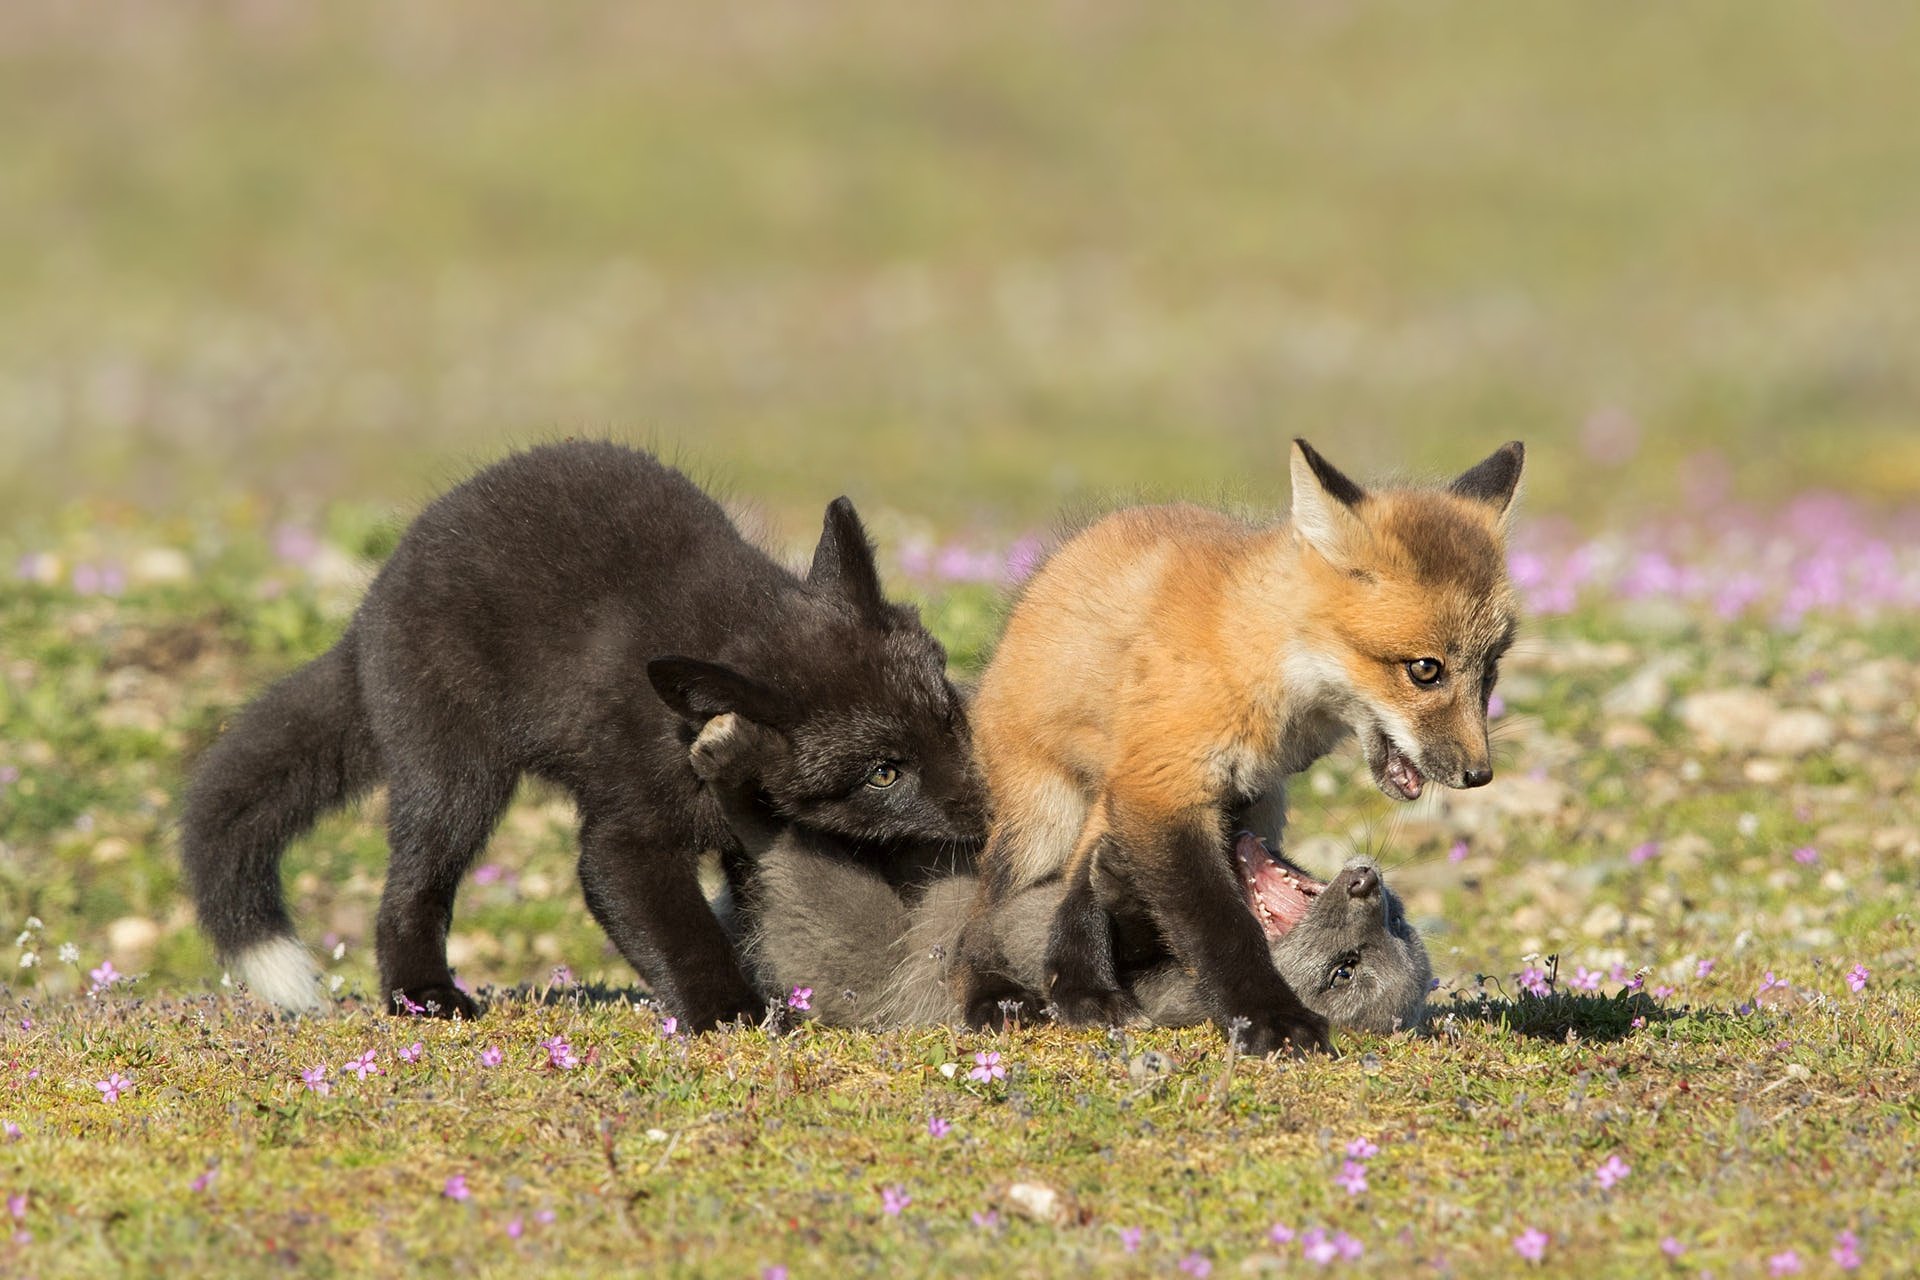 Those are foxes. Лиса. Фото лисы. Лисица с лисятами. Лисята фото.